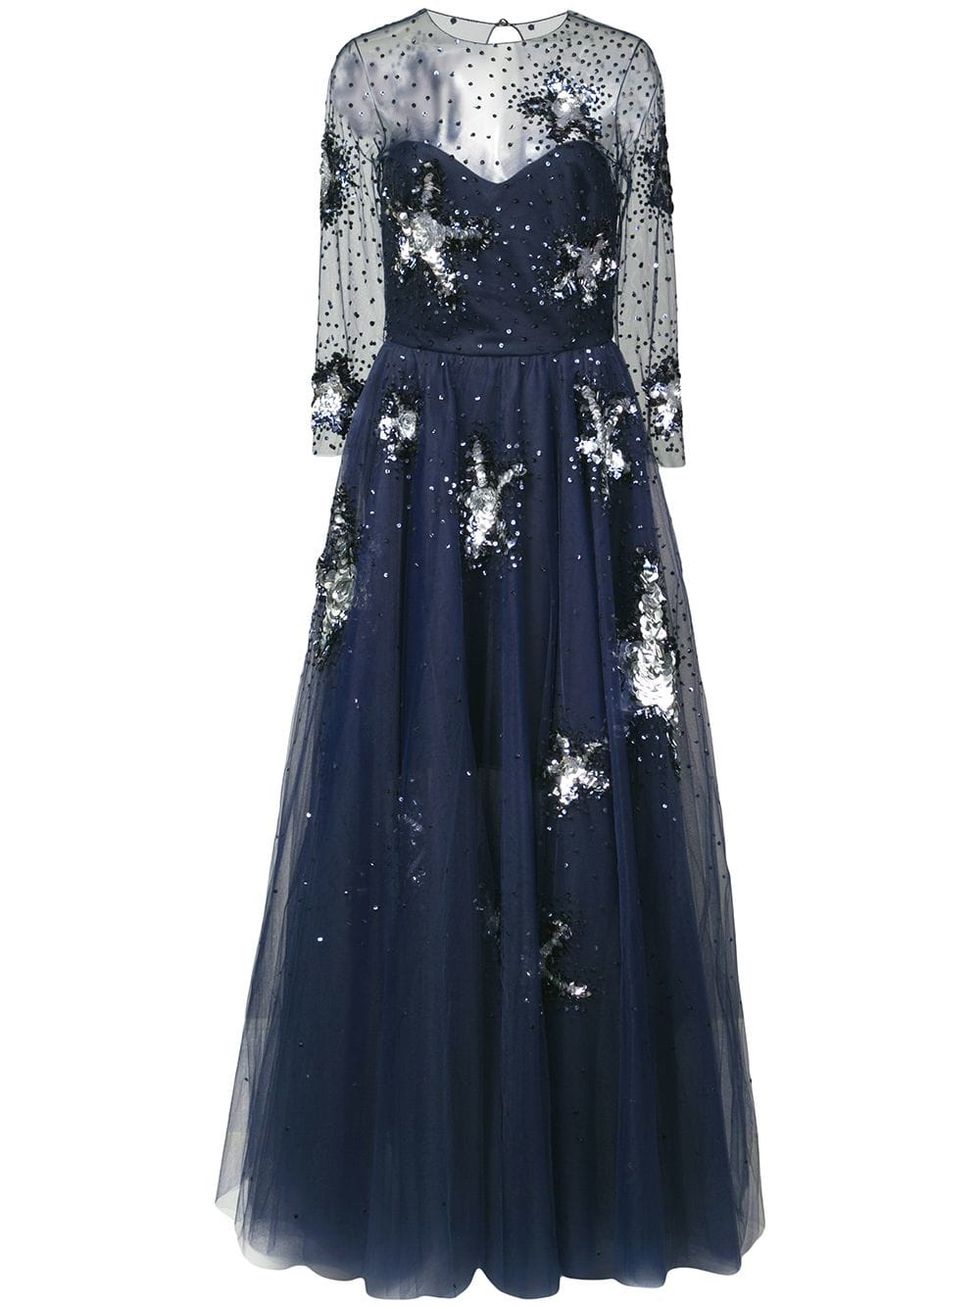 Meghan Markle Wears Embellished Oscar de la Renta Gown & Presents Award ...